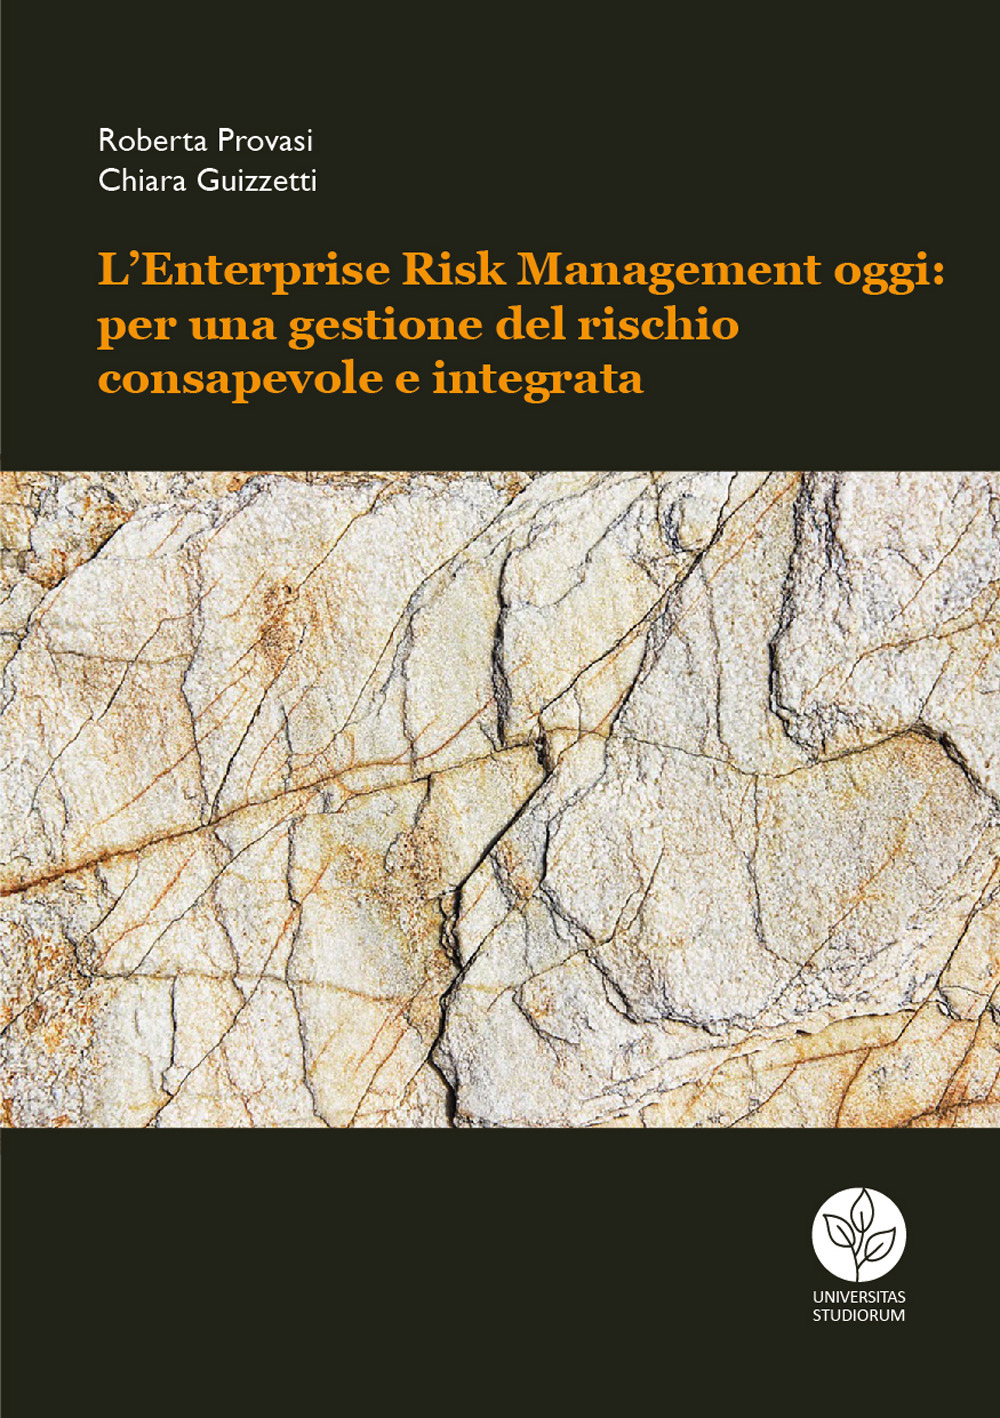 L'Enterprise Risk Management oggi: per una gestione del rischio consapevole e integrata